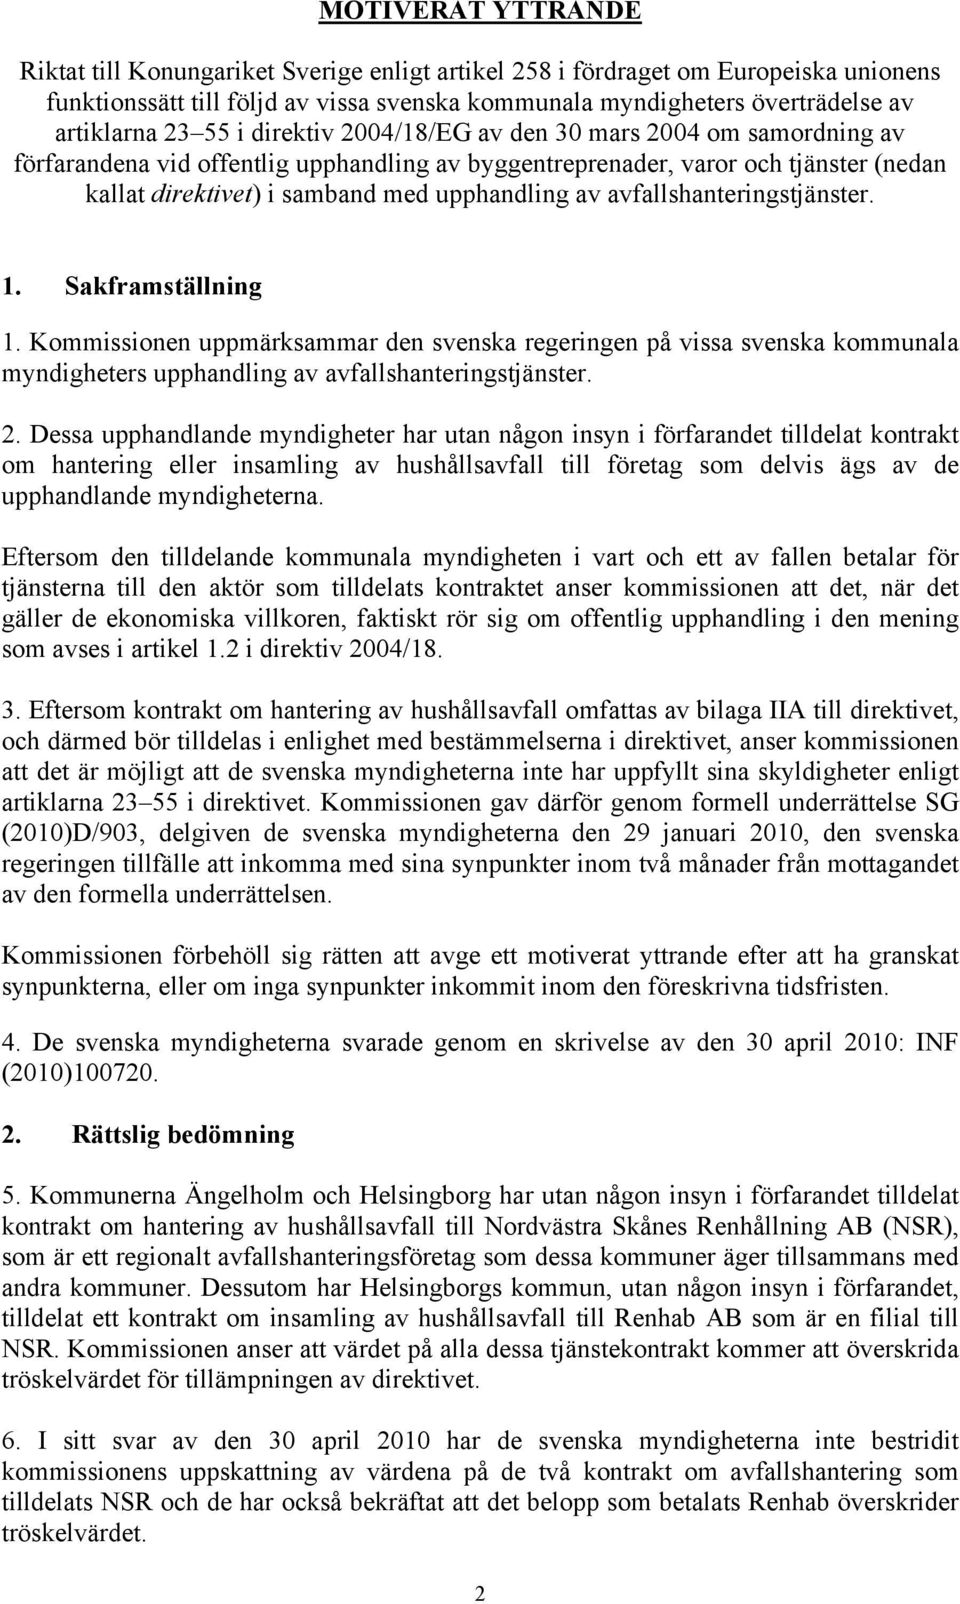 avfallshanteringstjänster. 1. Sakframställning 1. Kommissionen uppmärksammar den svenska regeringen på vissa svenska kommunala myndigheters upphandling av avfallshanteringstjänster. 2.